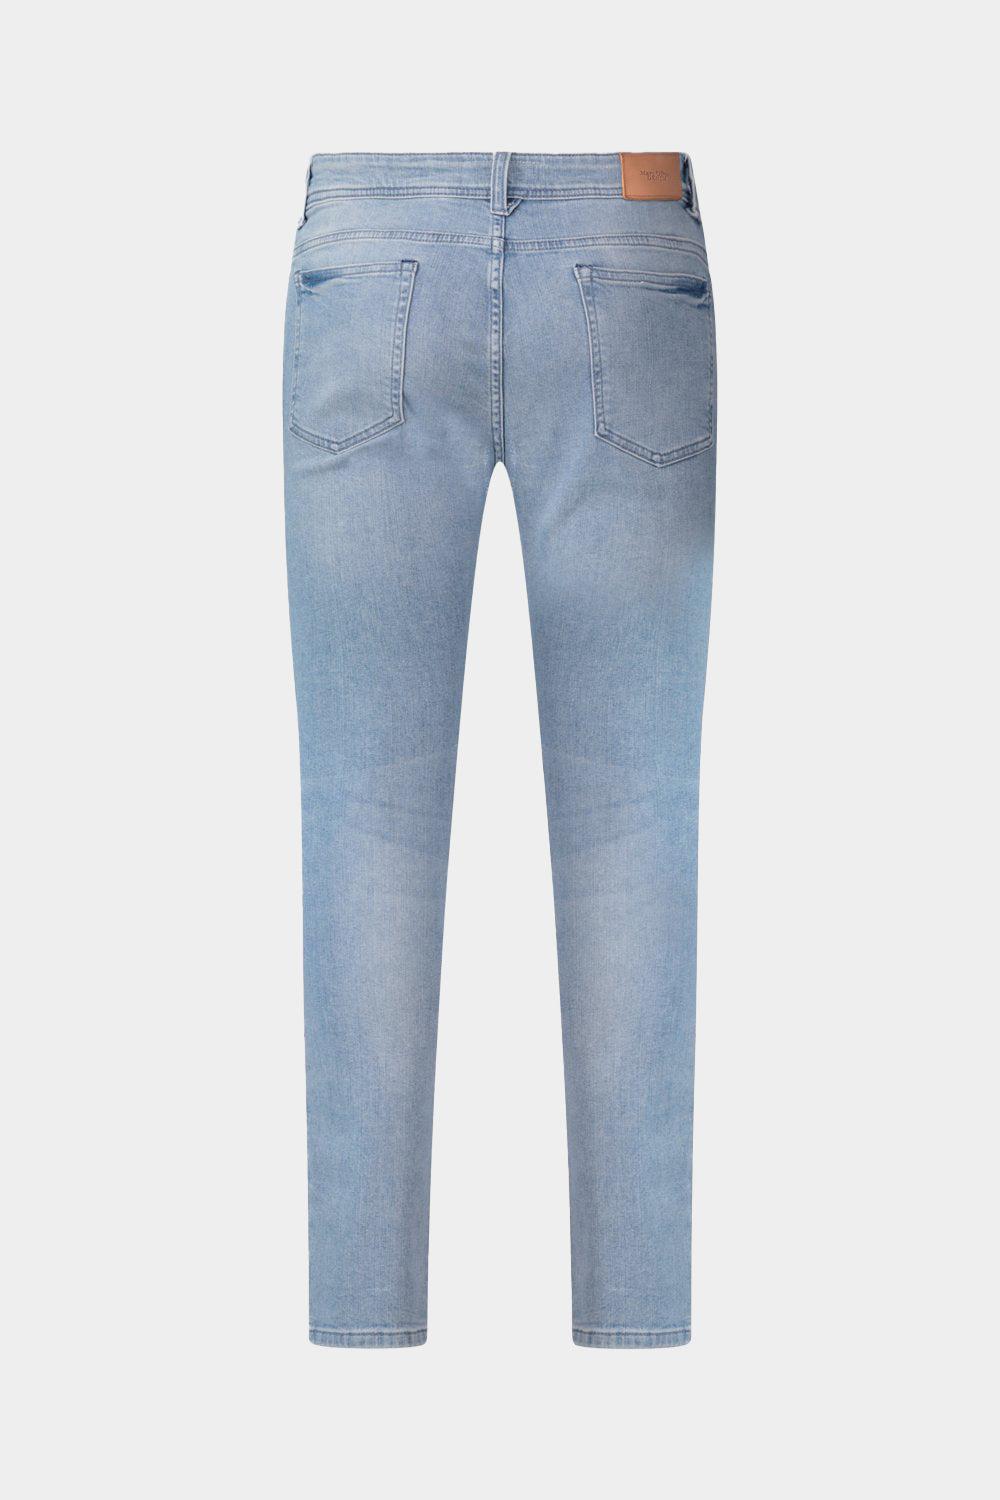 ג'ינס סקיני לגברים שפשוף בהיר MARC O'POLO Vendome online | ונדום .